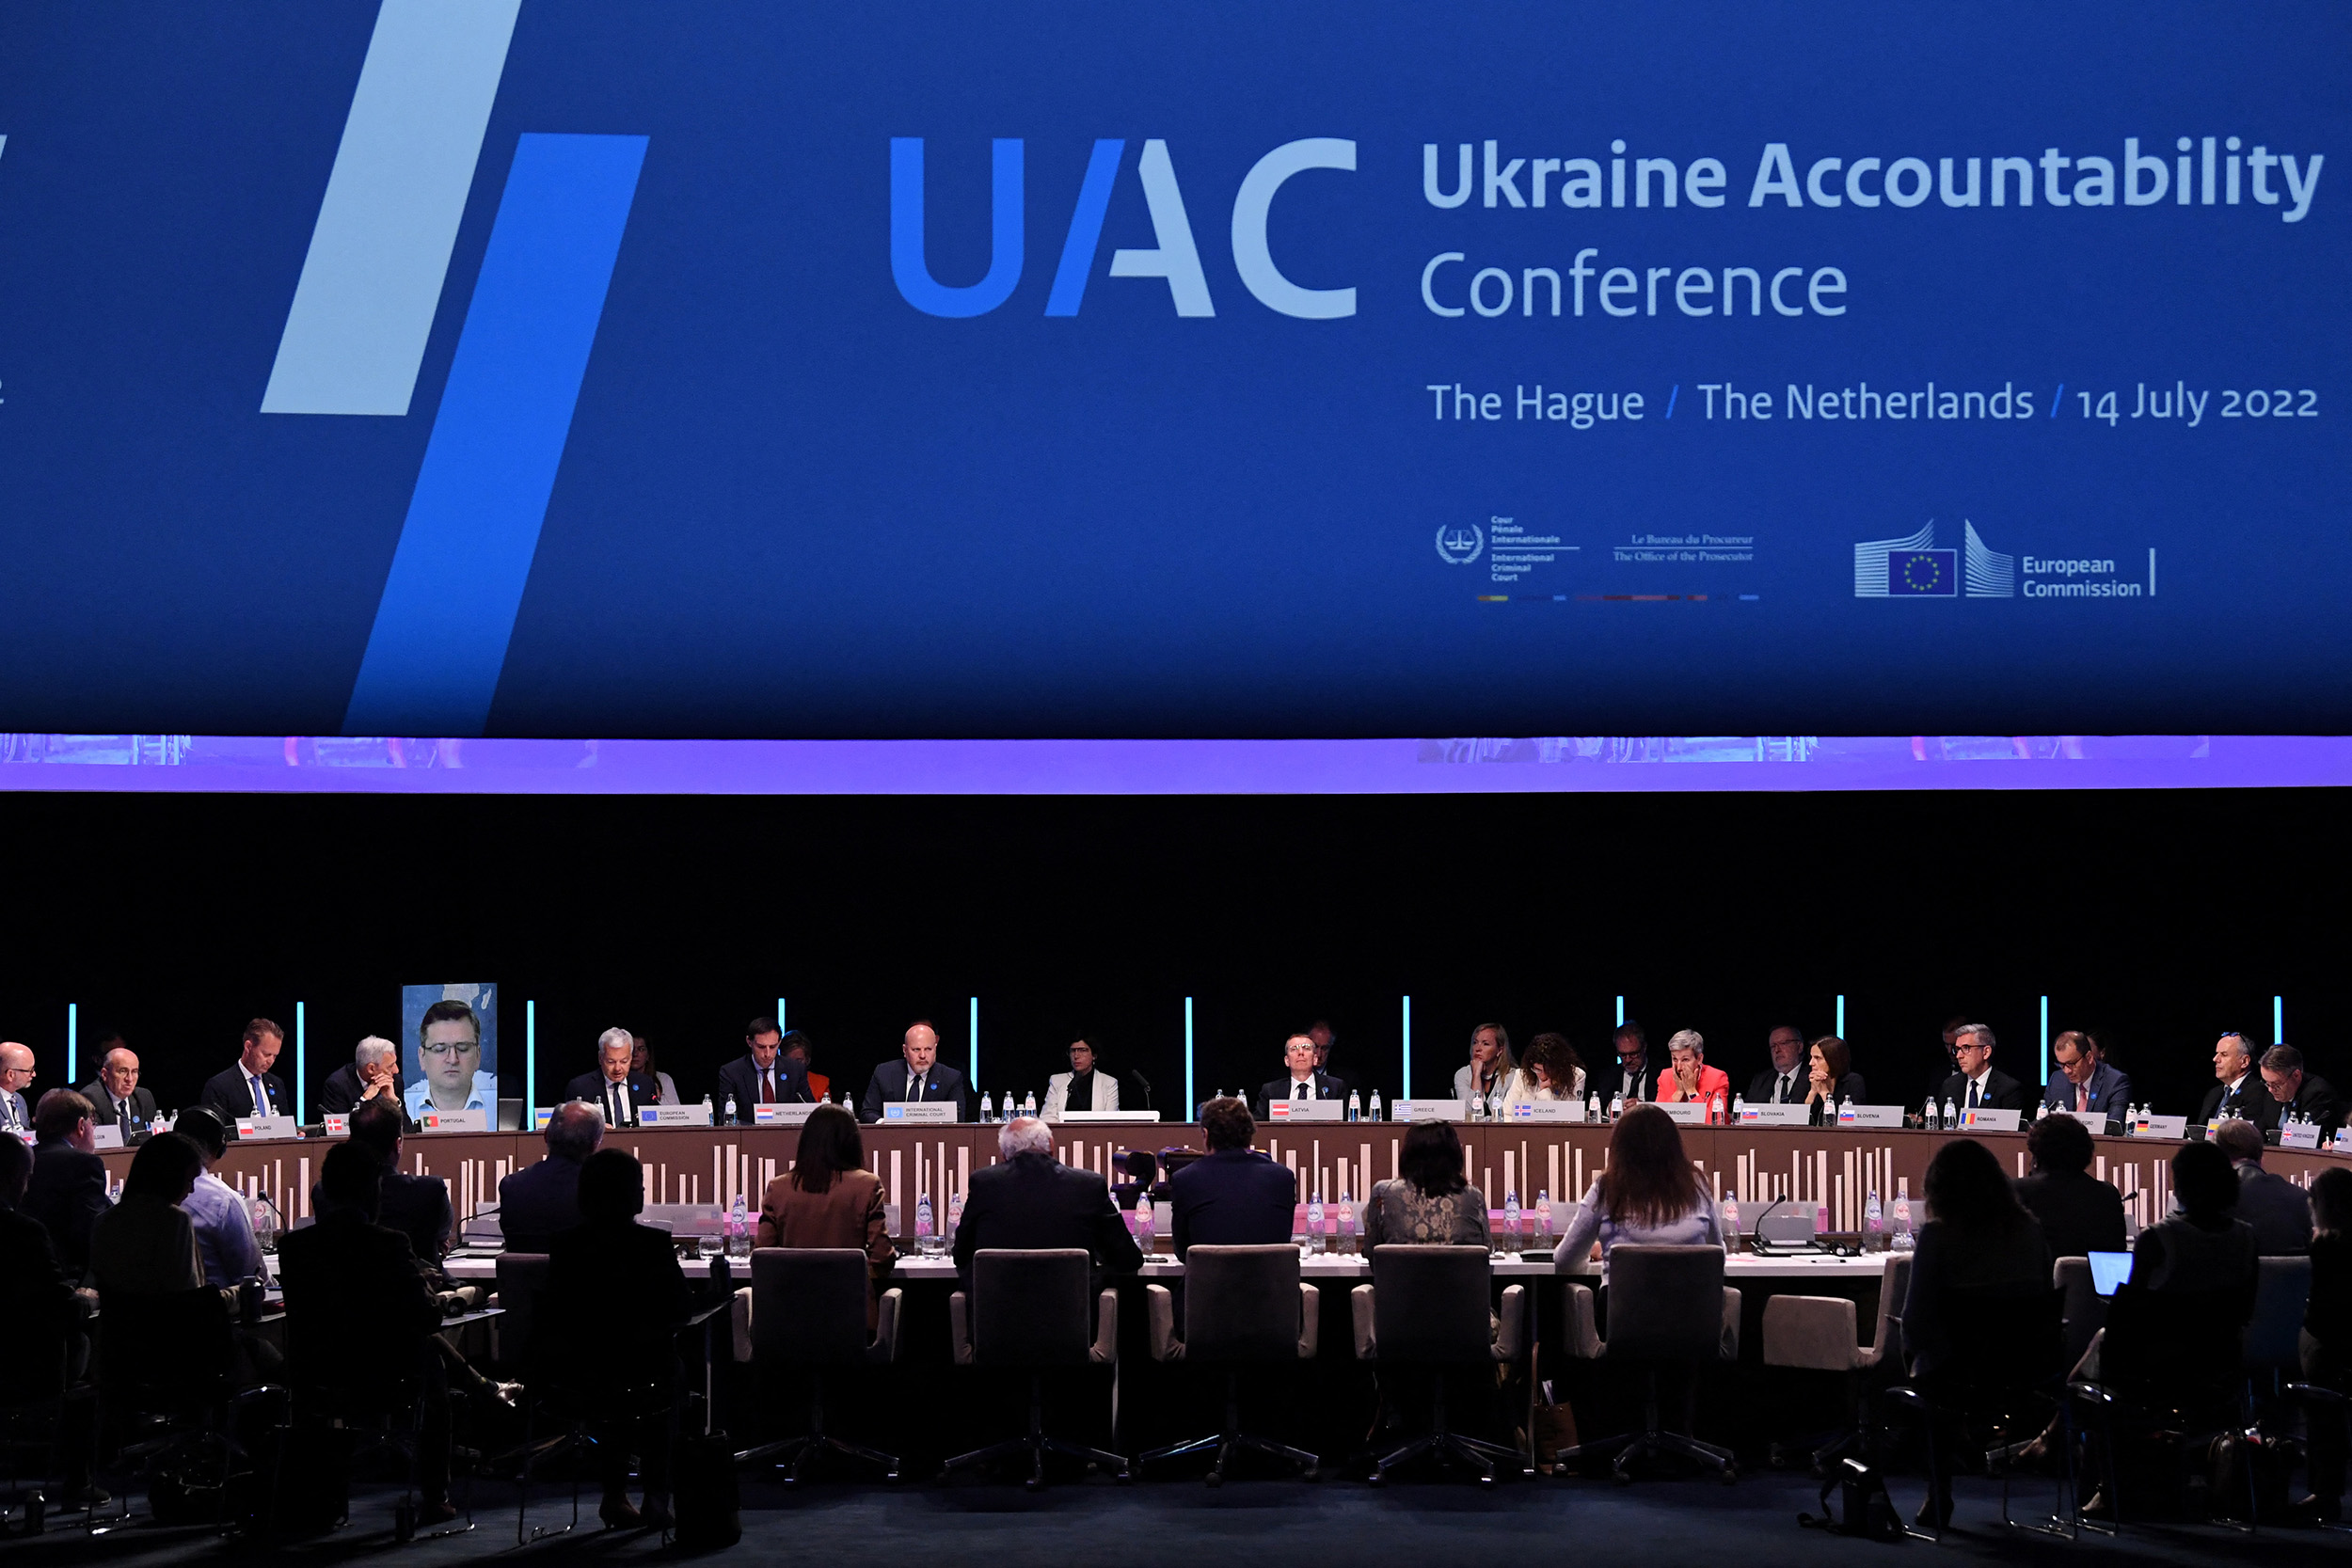 Ukrainasit çojnë rusët në Hagë, nis konferenca për krimet e luftës